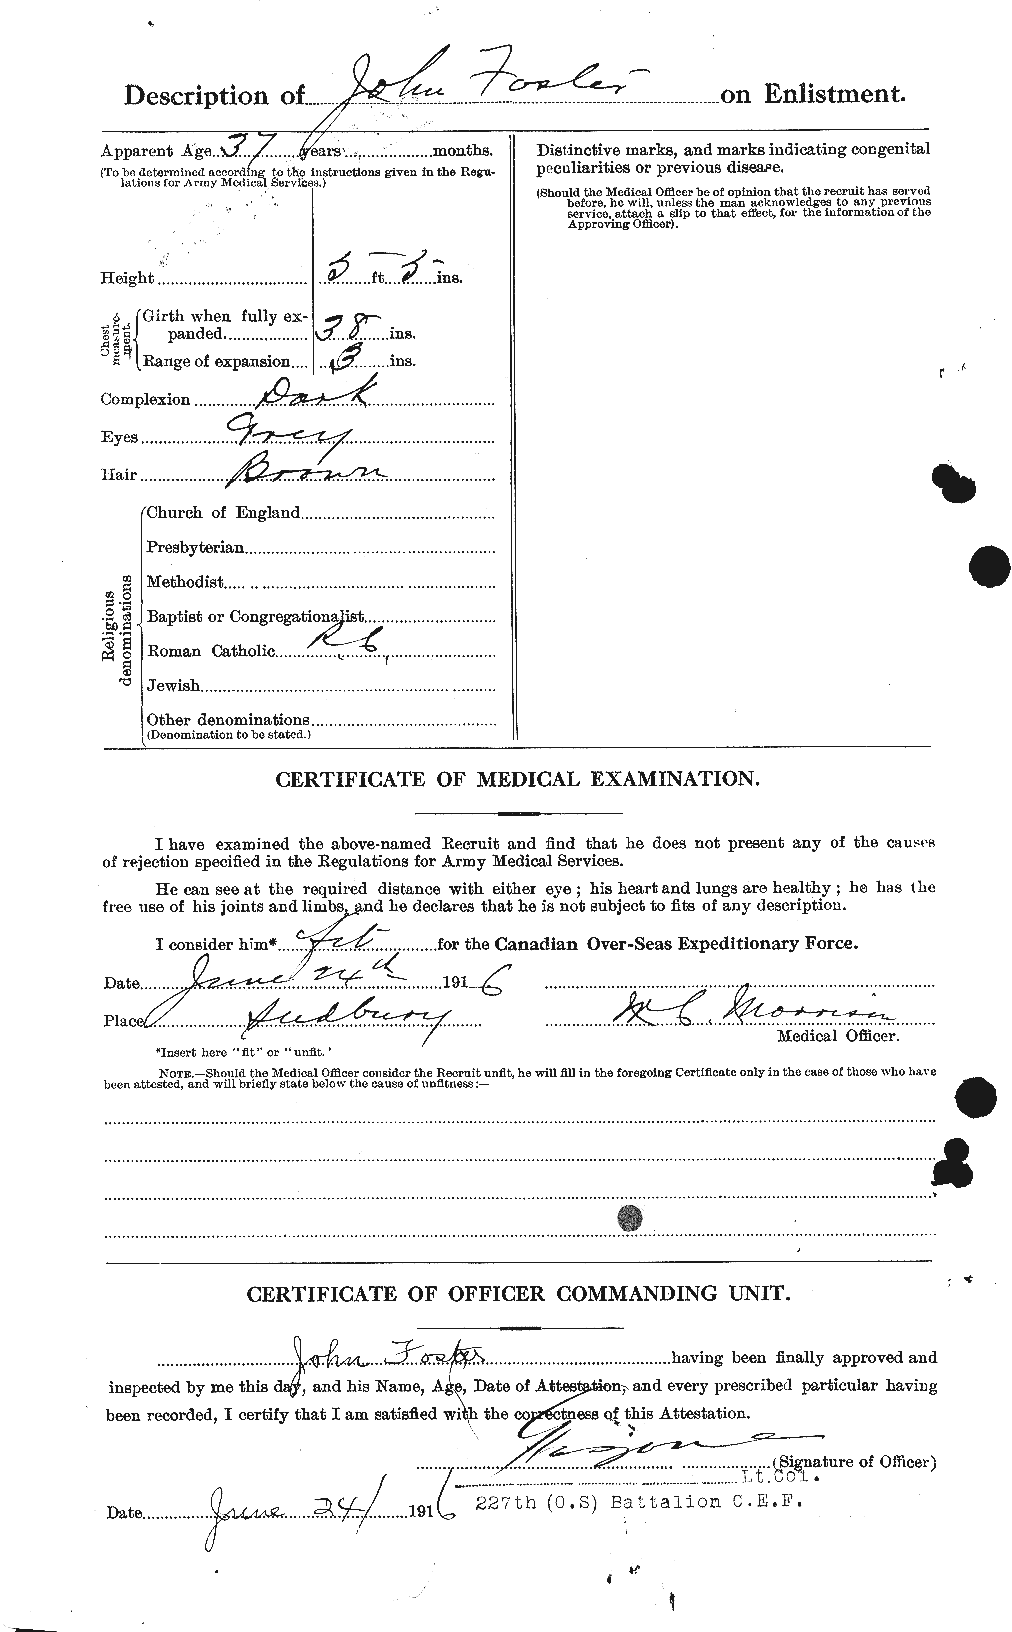 Dossiers du Personnel de la Première Guerre mondiale - CEC 333324b